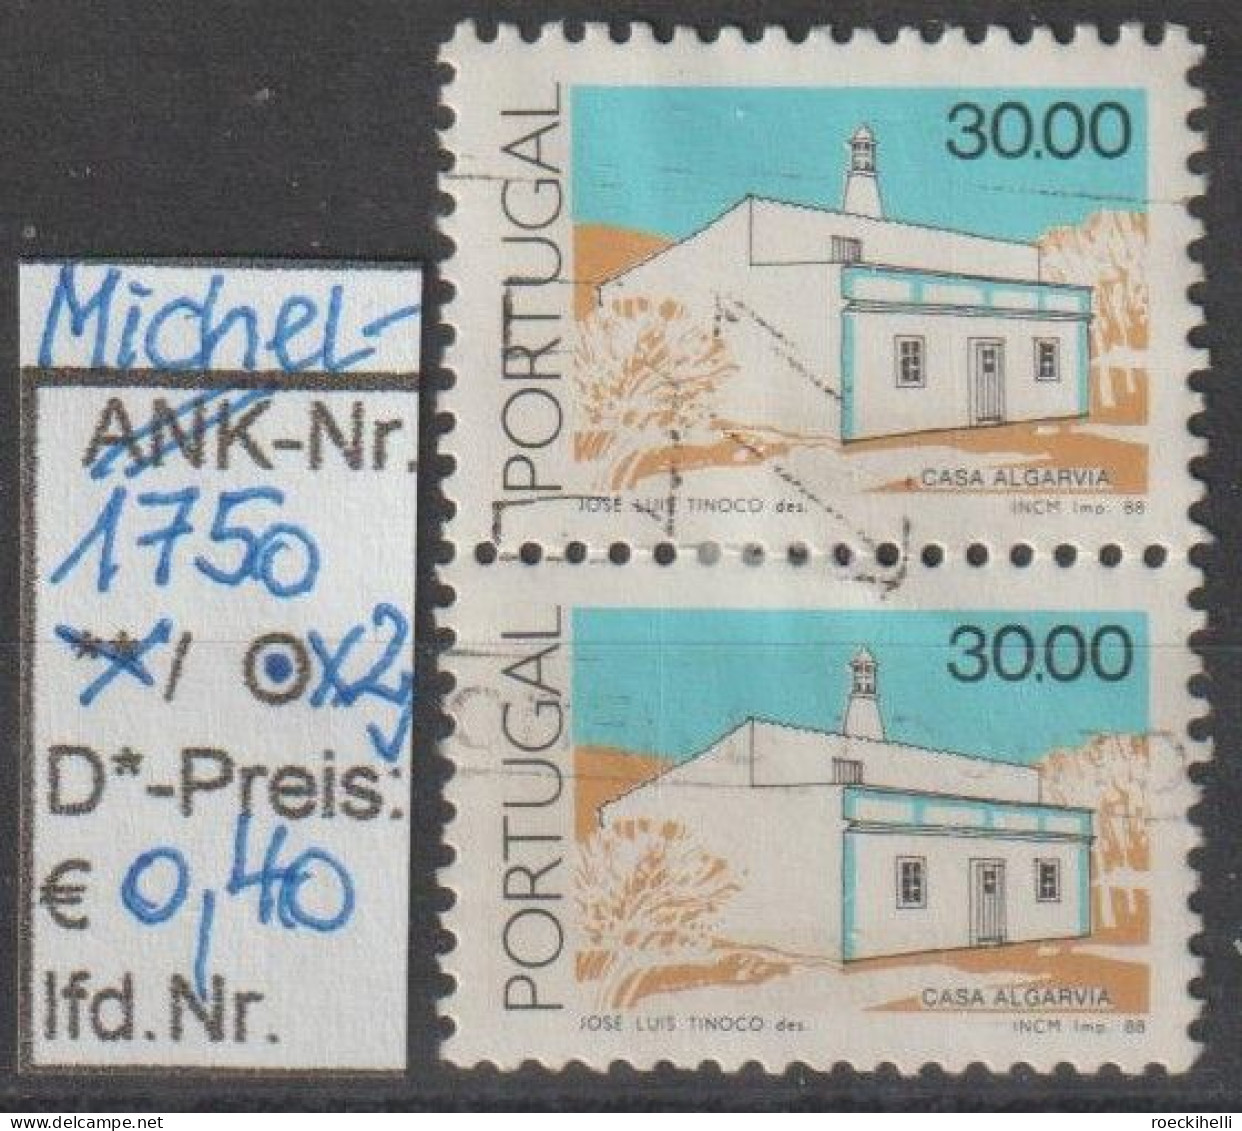 1988 - PORTUGAL - FM/DM "Traditionelle Architektur" 30,00 E Mehrf. - 2x O Gestempelt - S.Scan (port 1750o X2) - Oblitérés